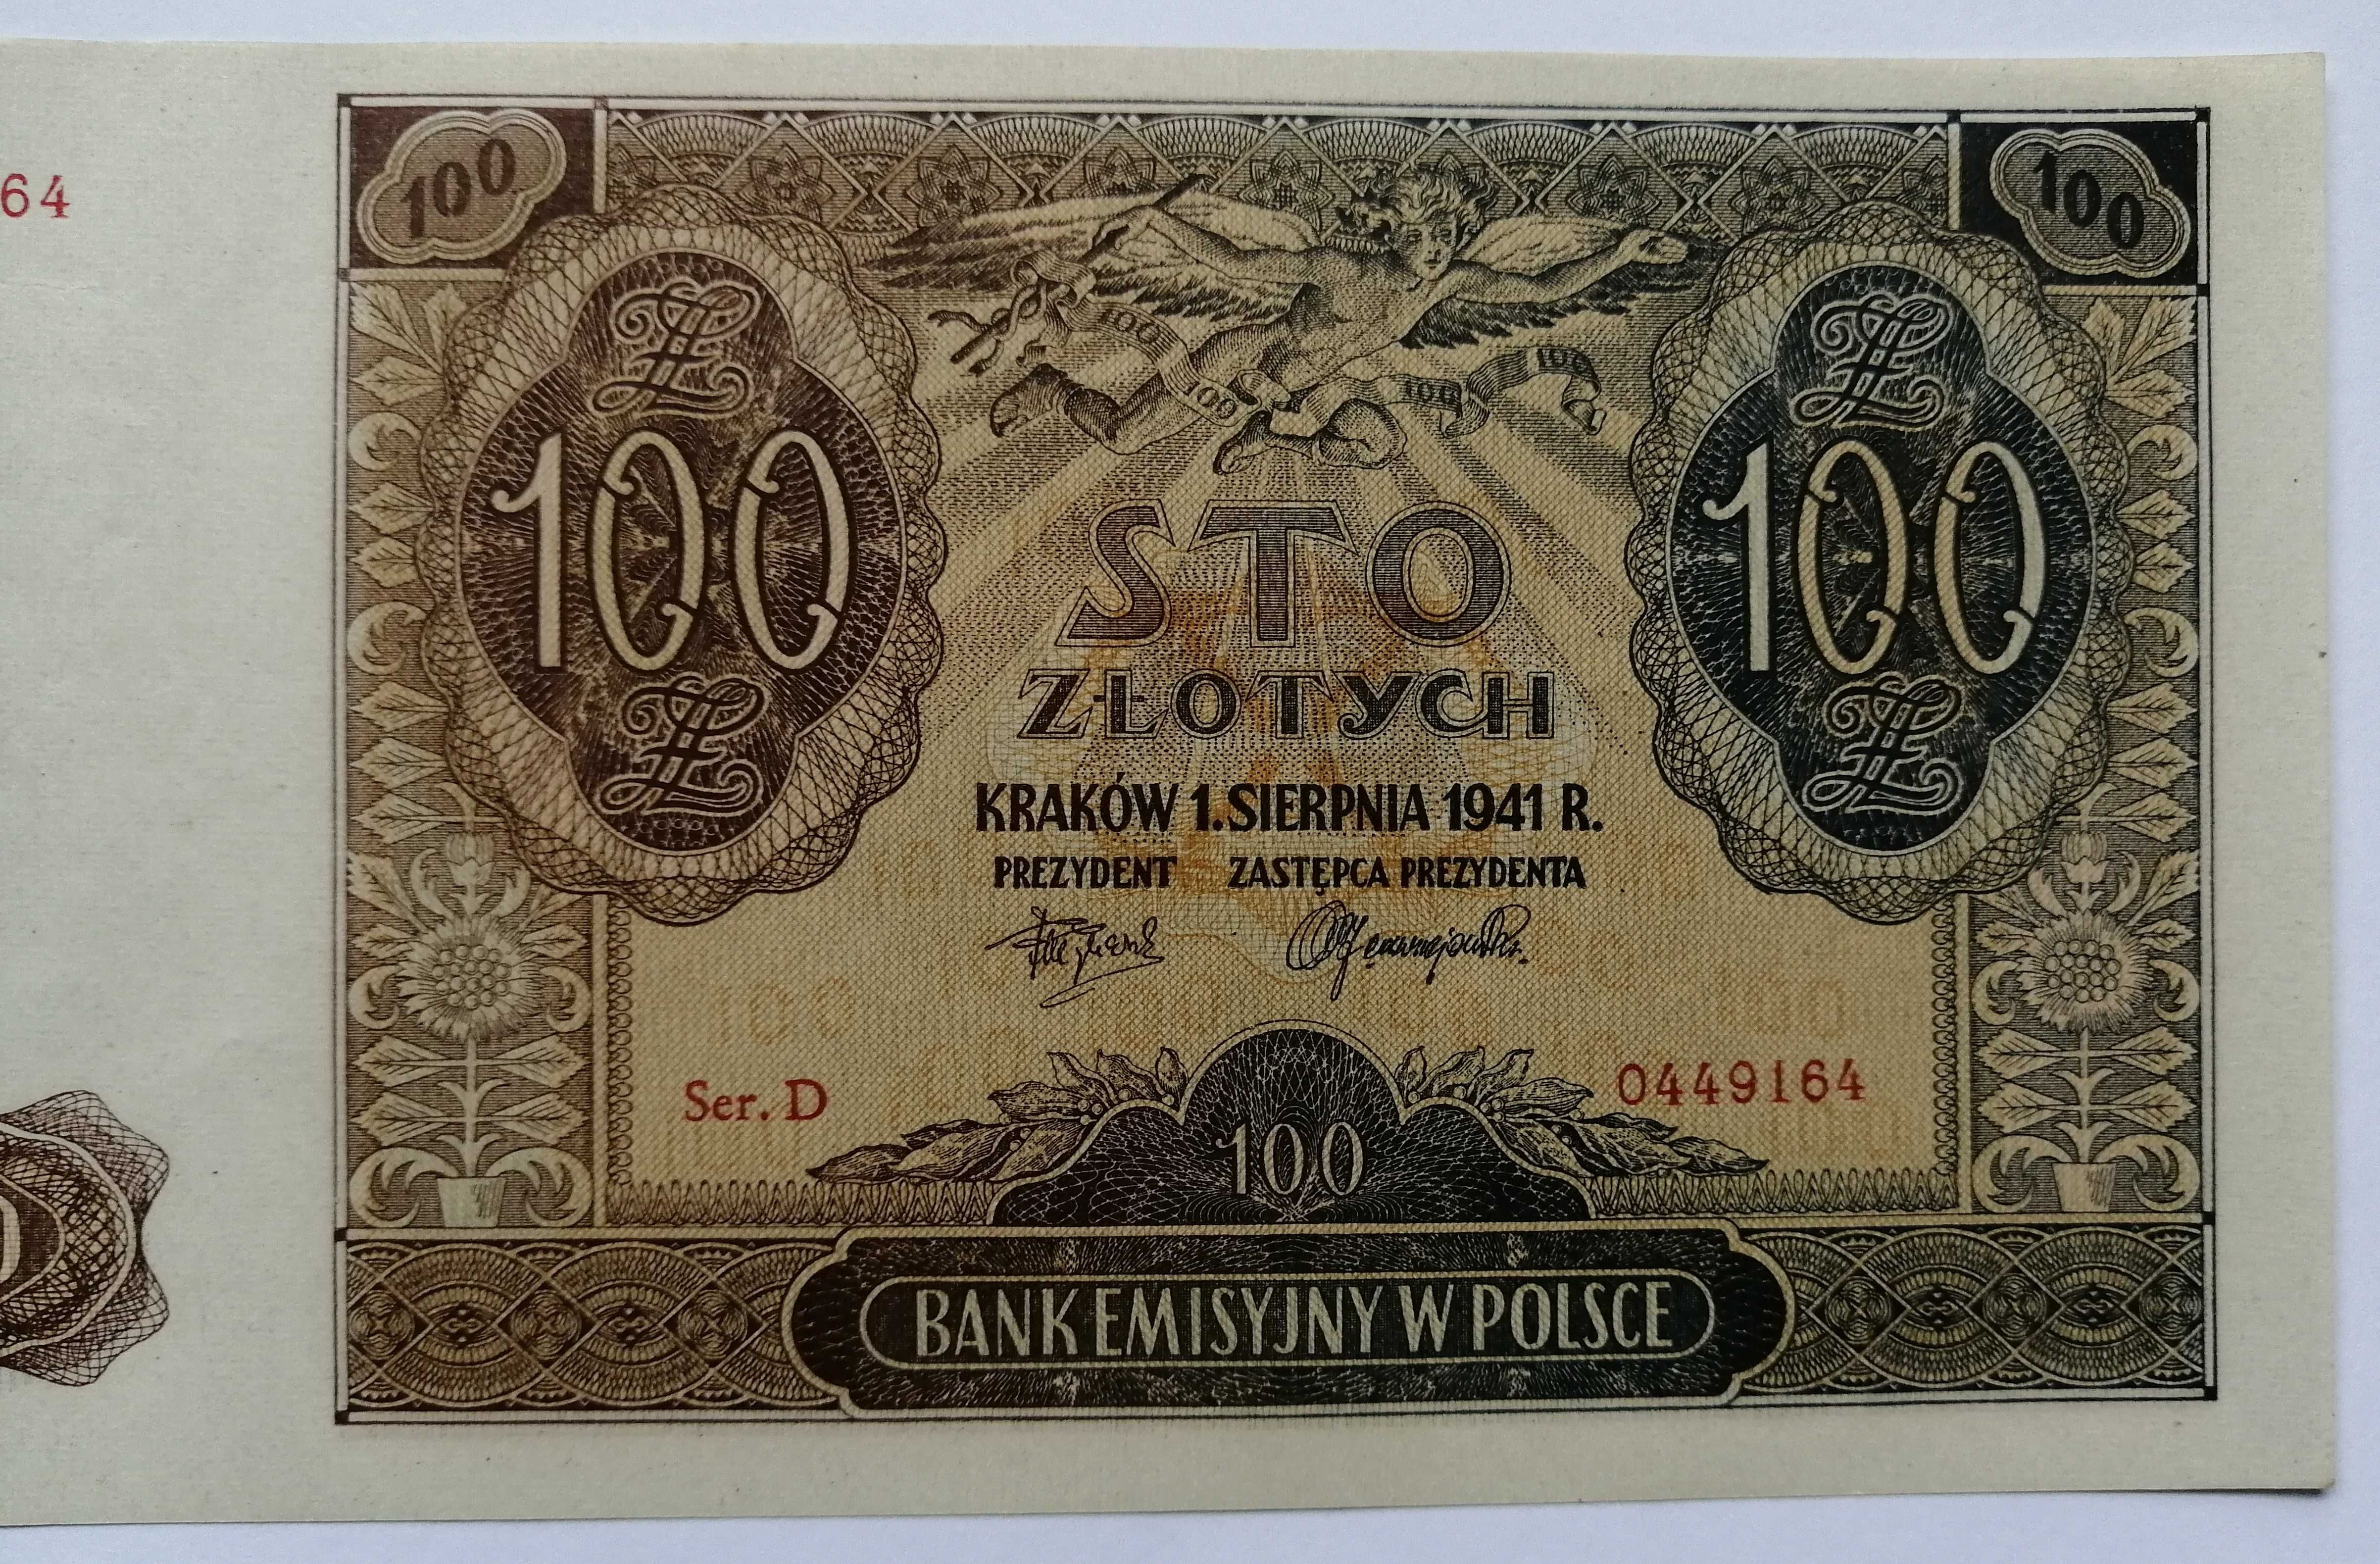 Banknot Polska - 100 złotych - 1941 rok. Ser. D ( z paczki bankowej)